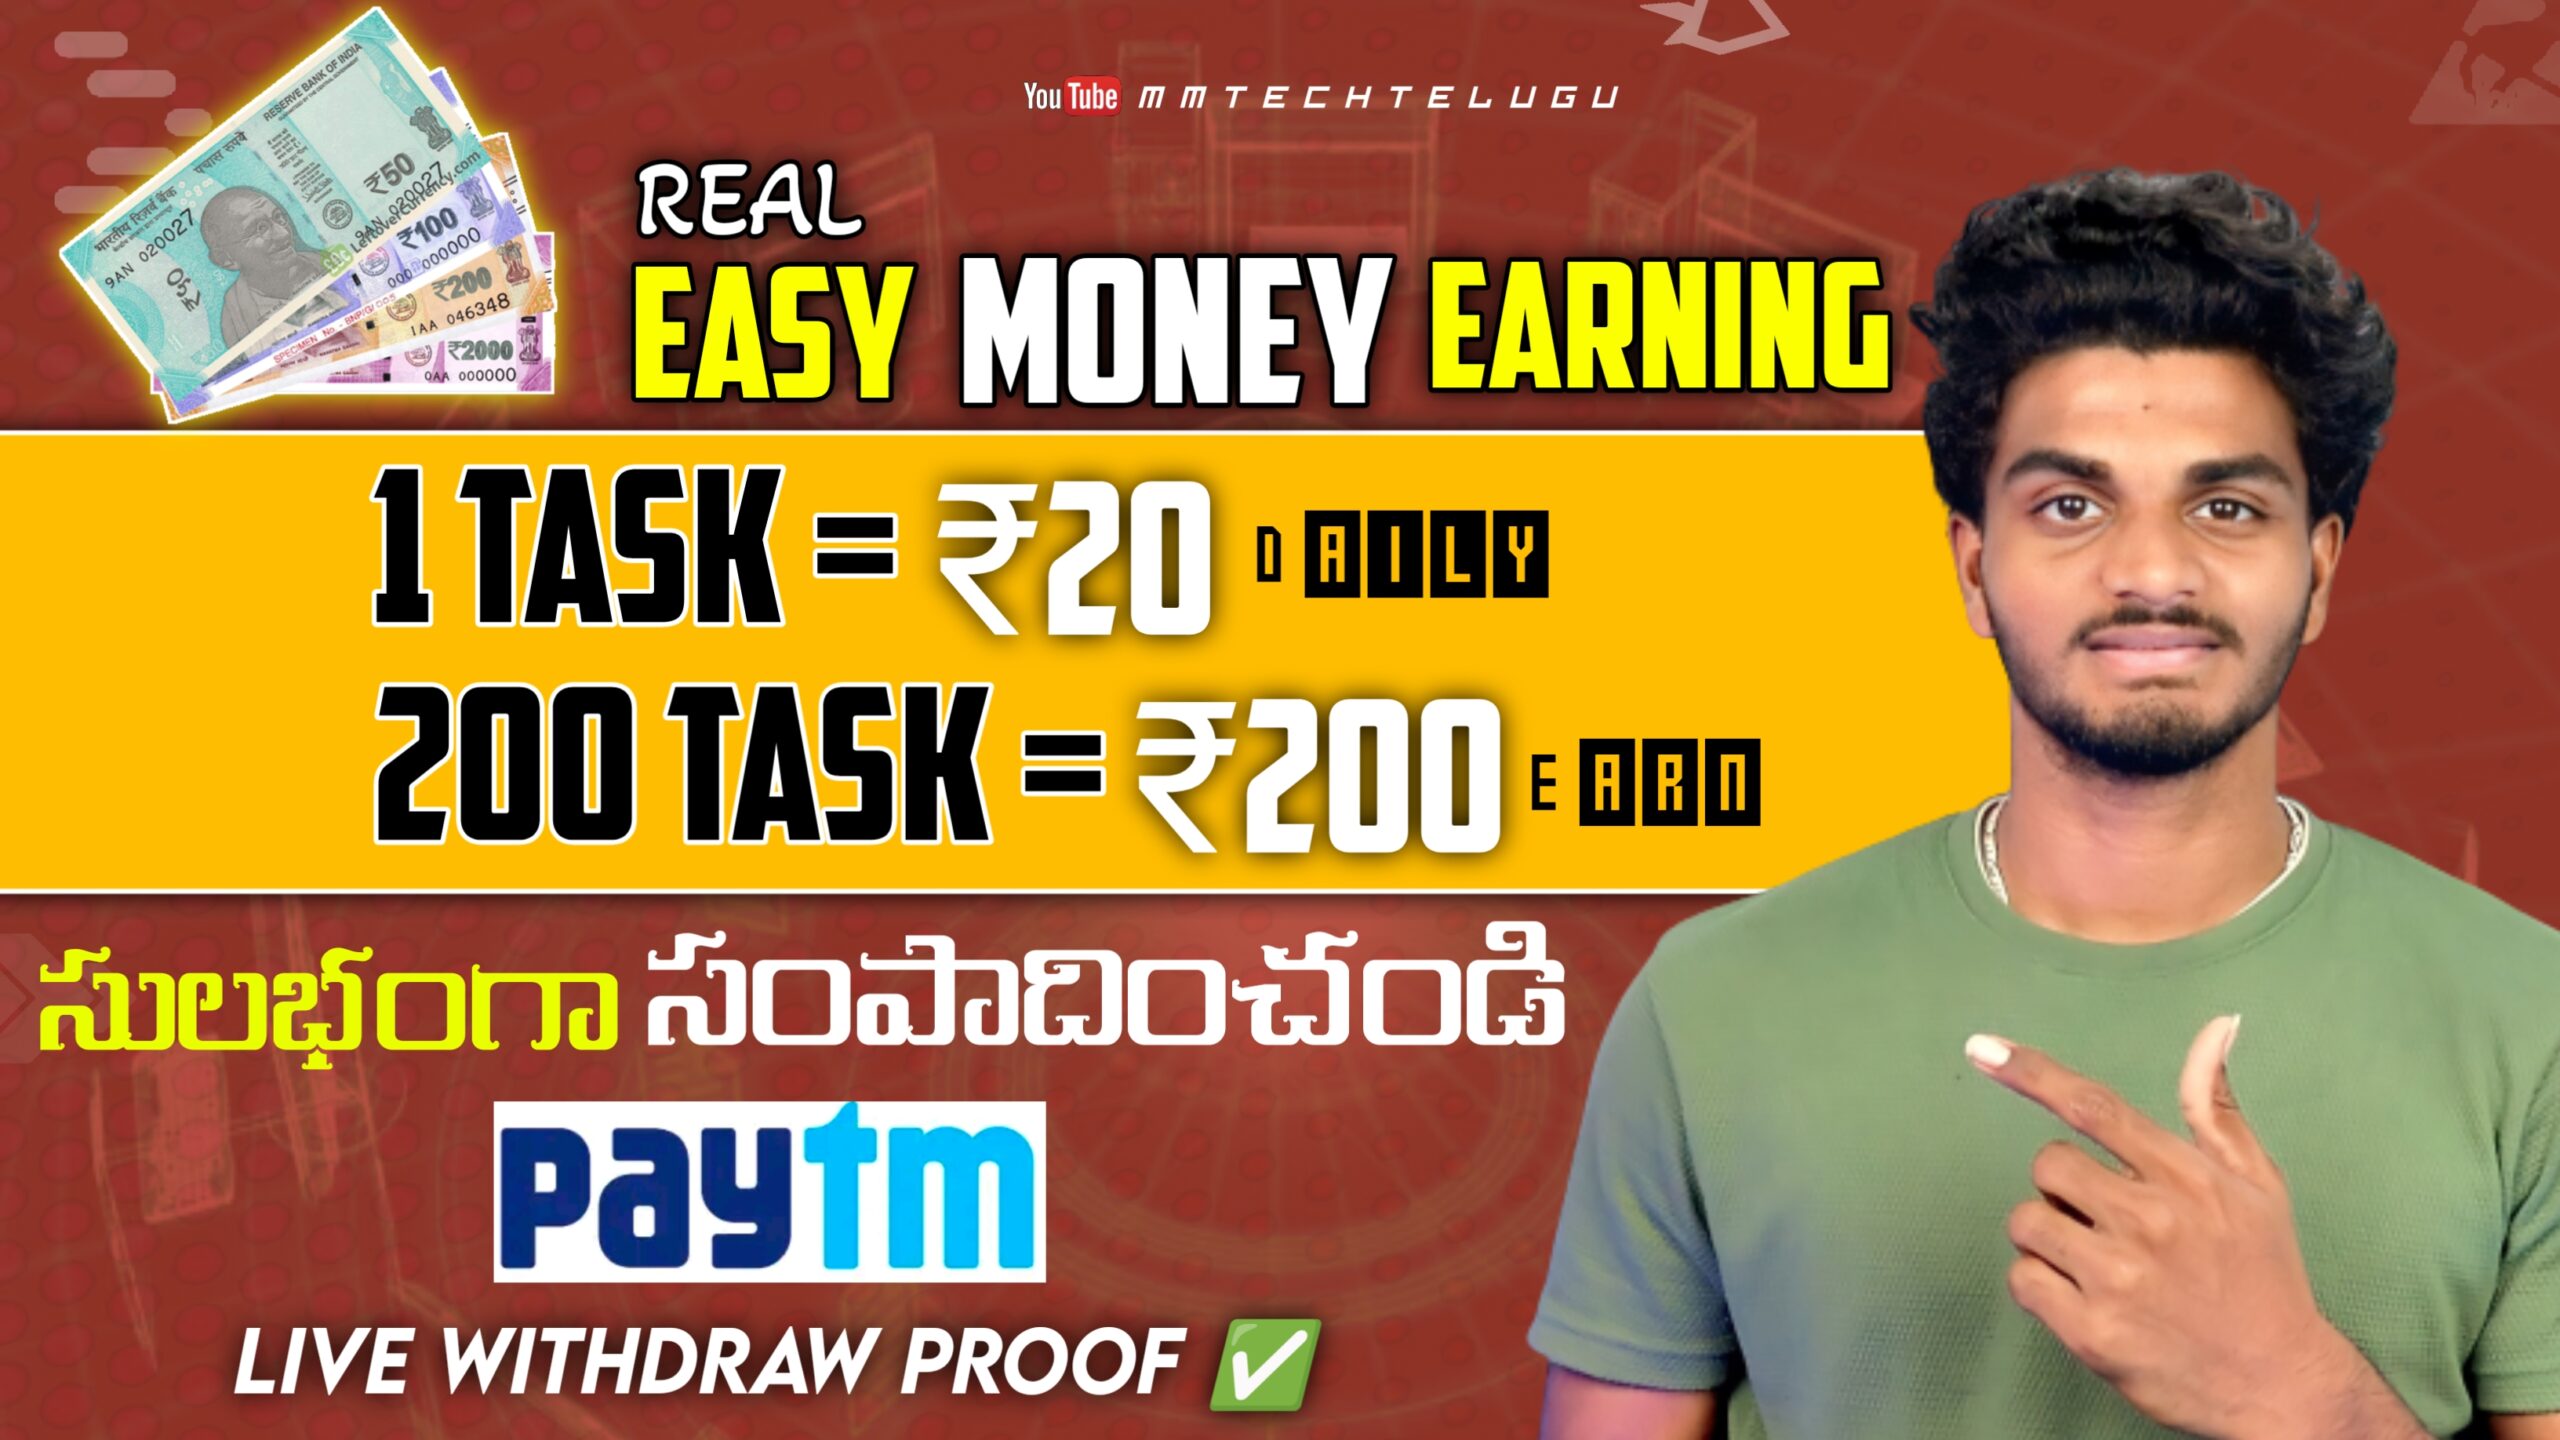 Earn money online